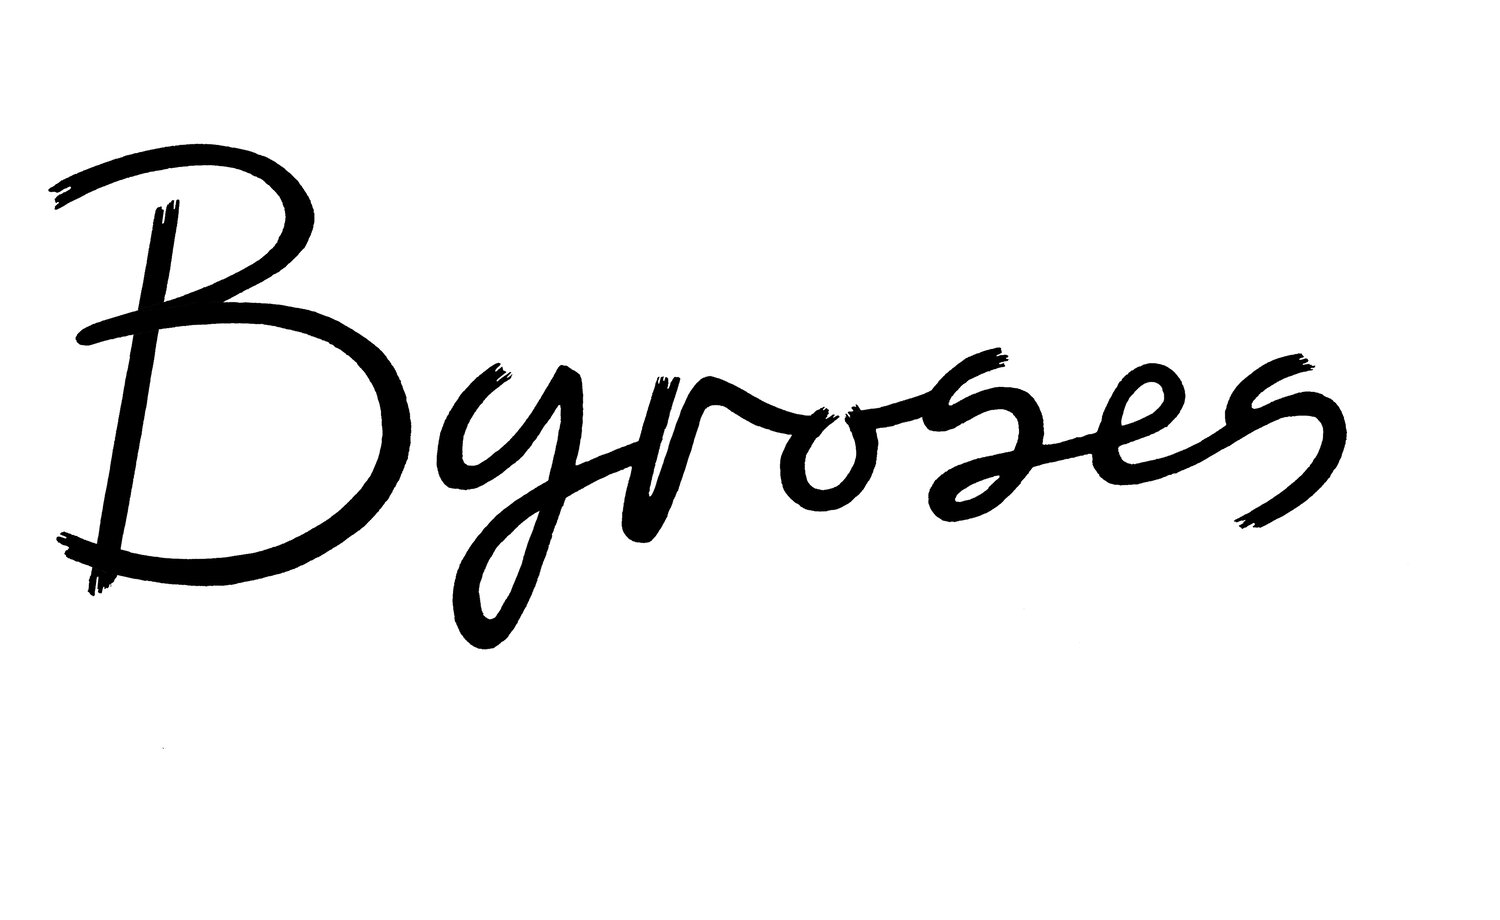 Byroses